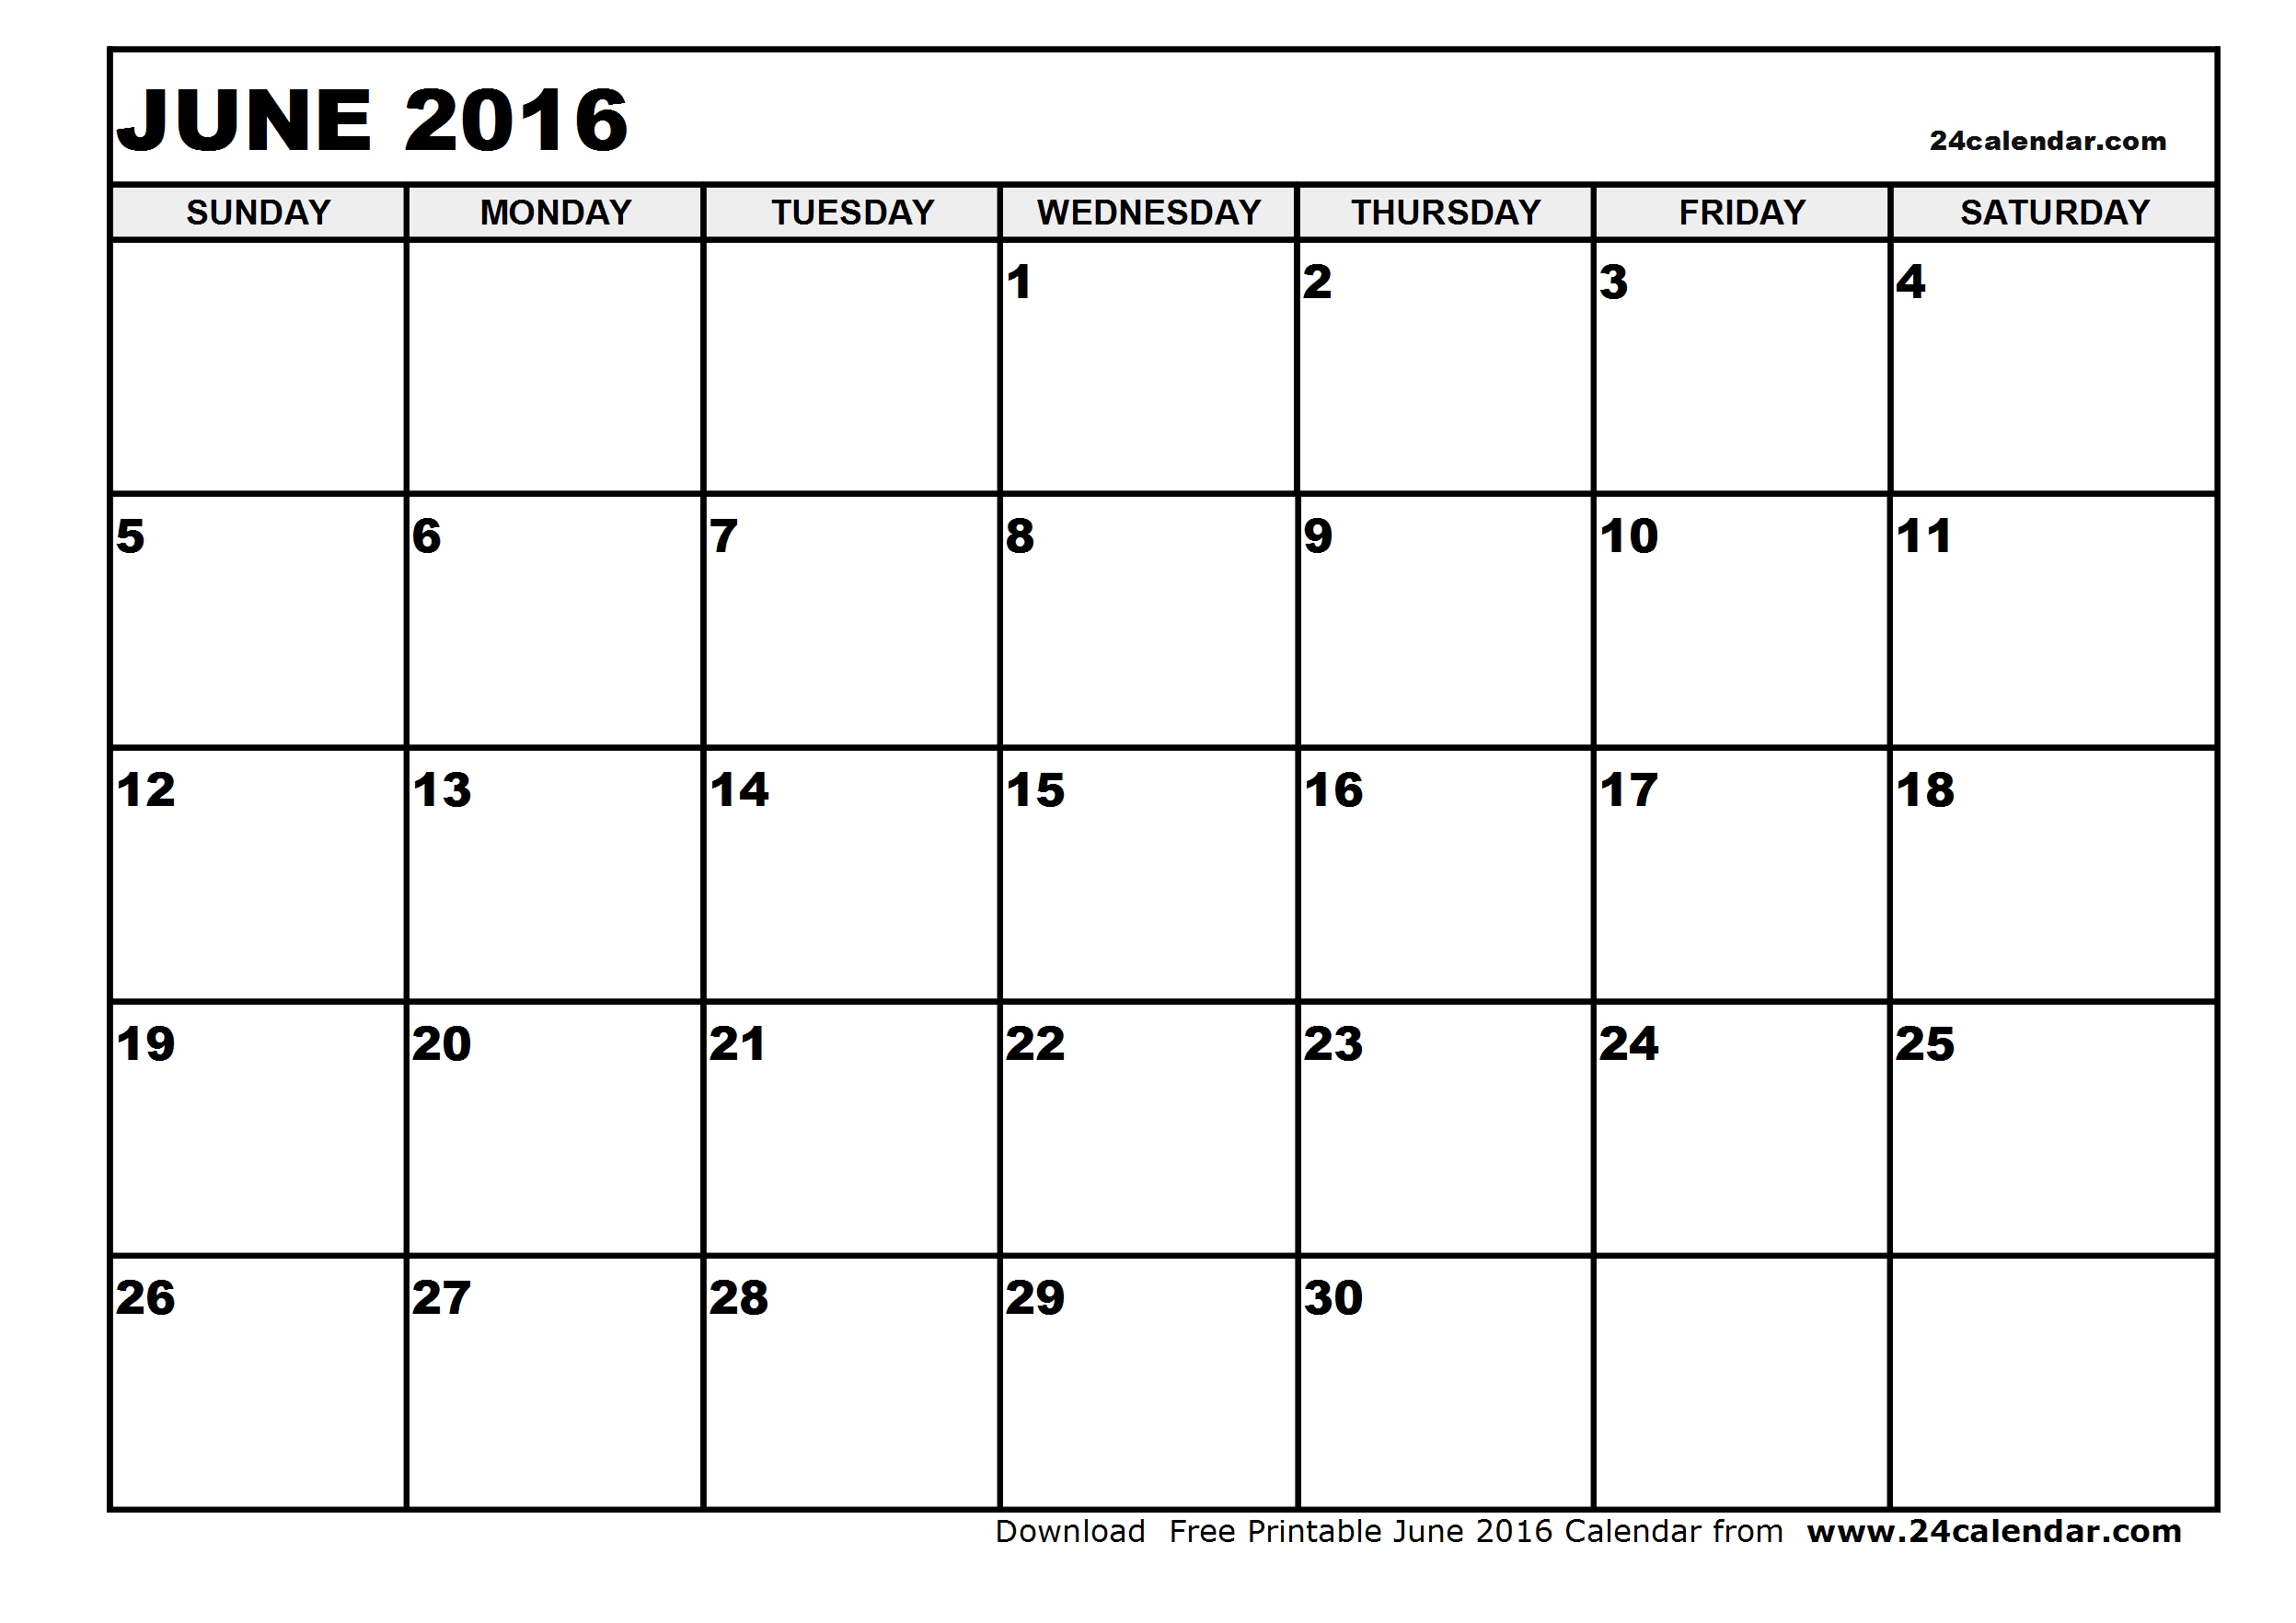 June 6 calendar clipart 1